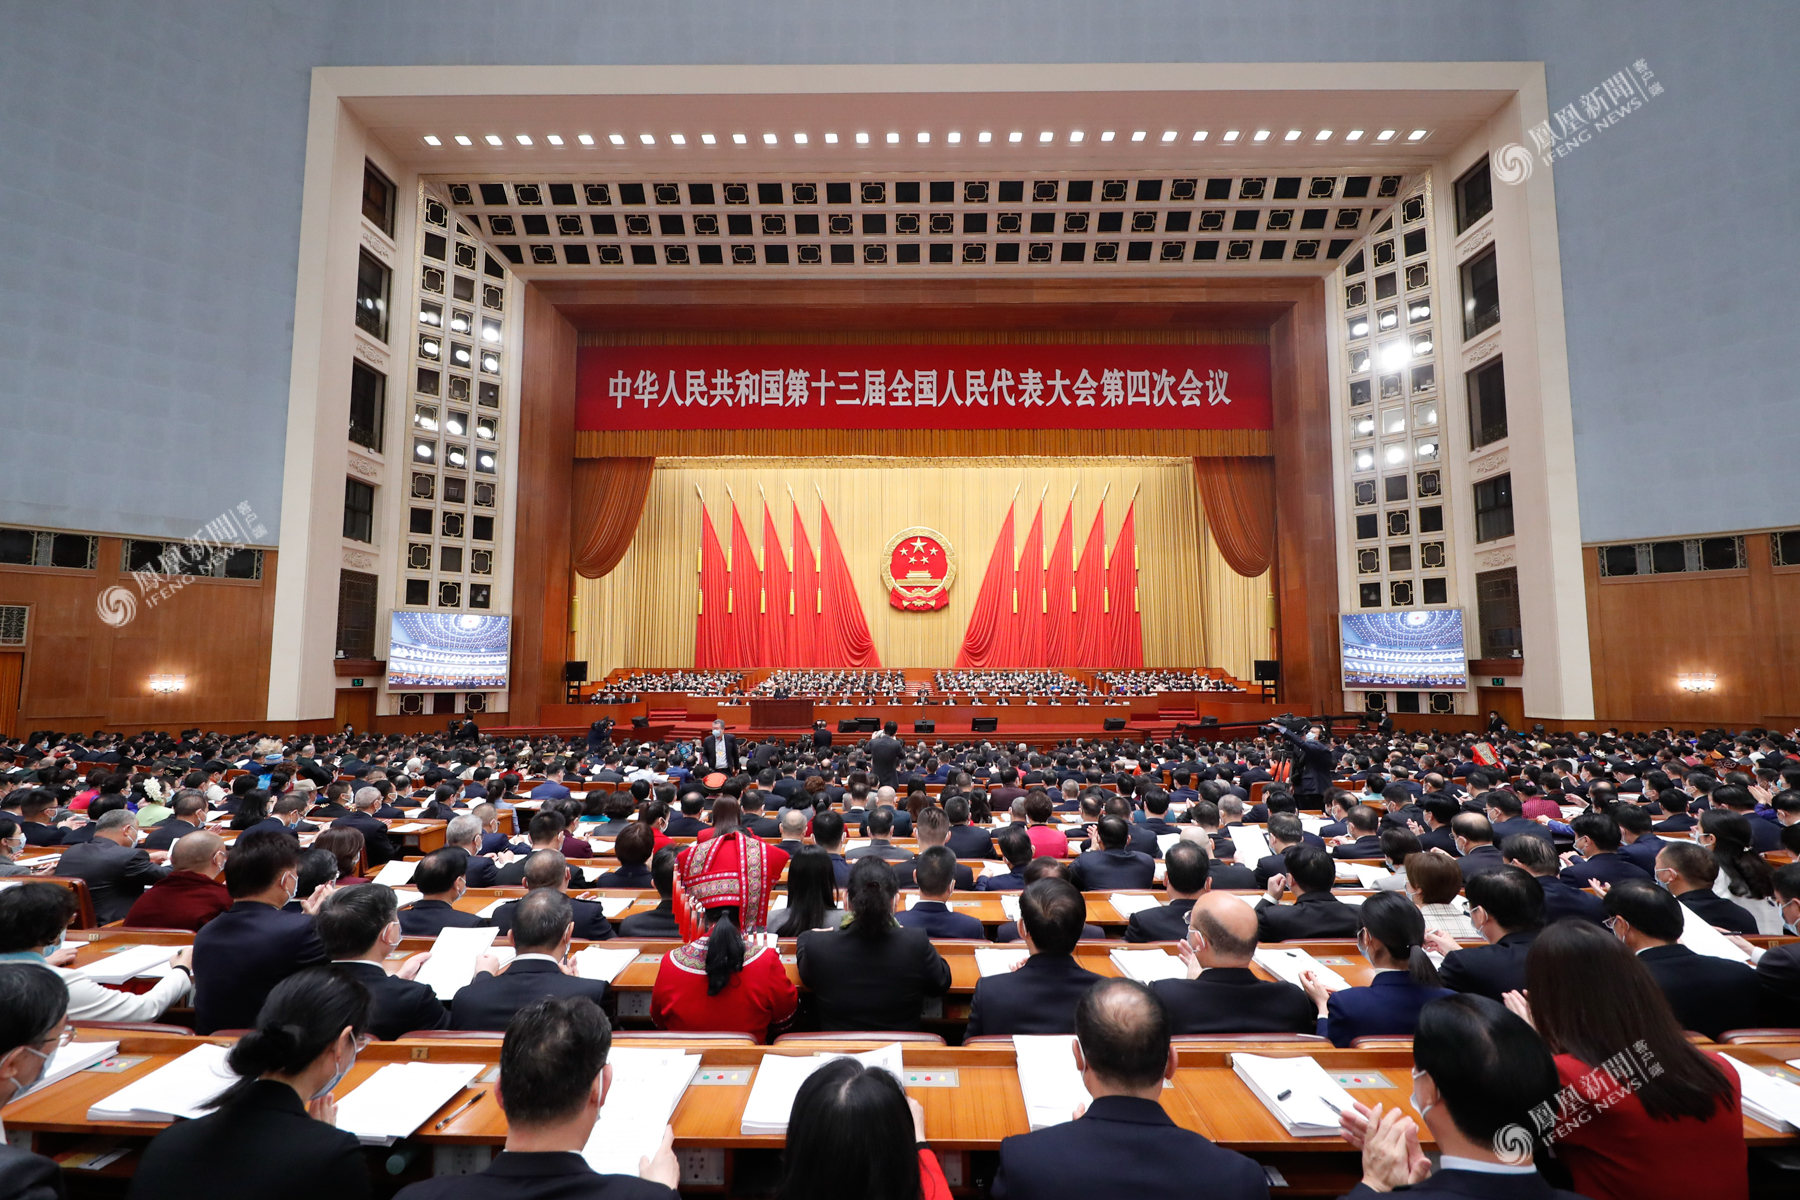 2021年3月7日,北京,全国政协十三届四次会议在北京人民大会堂举行第二